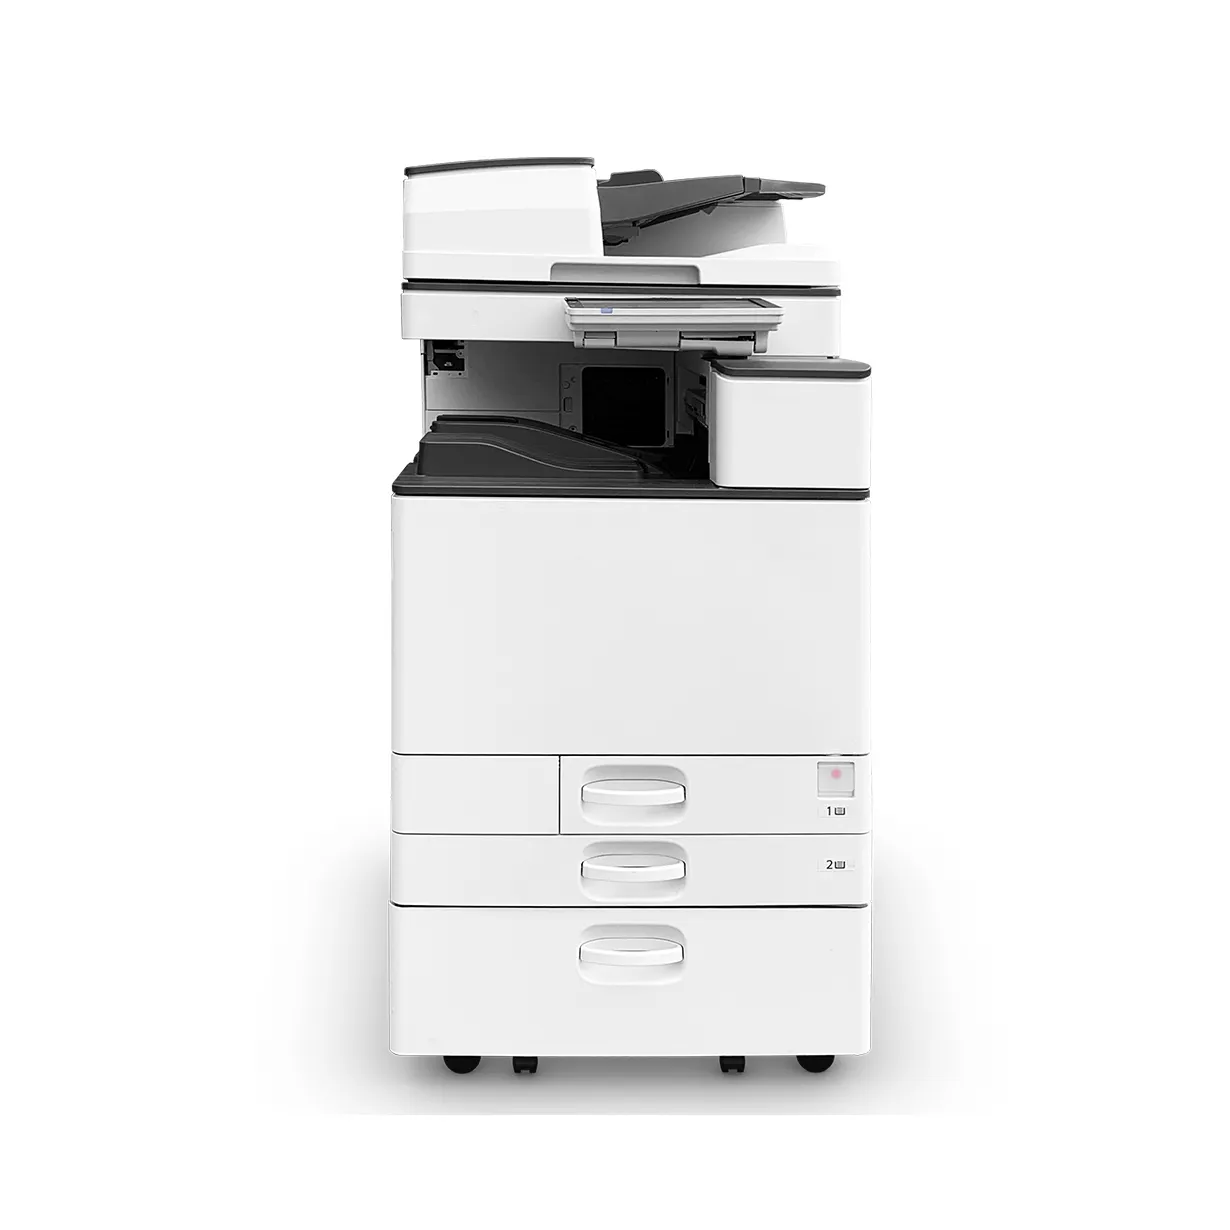 Ucuz fiyata satılık 100% orijinal fotokopi makinesi